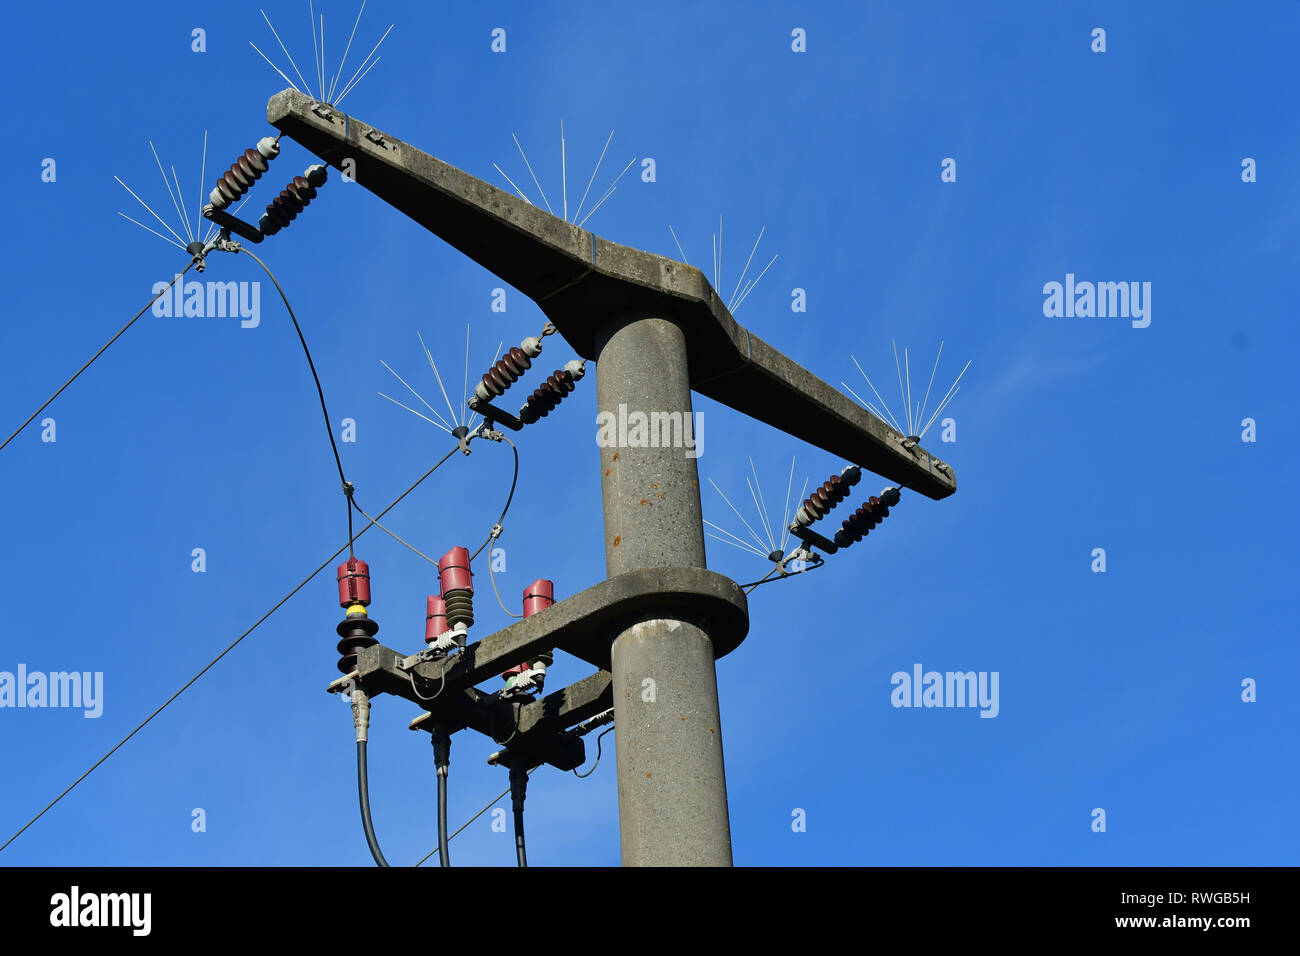 Getriebe Turm mit Verteilerbleche große Vögel von hier aus die Landung zu verhindern und damit einer meist tödlichen Stromschlag erleiden. Bayern, Deutschland Stockfoto